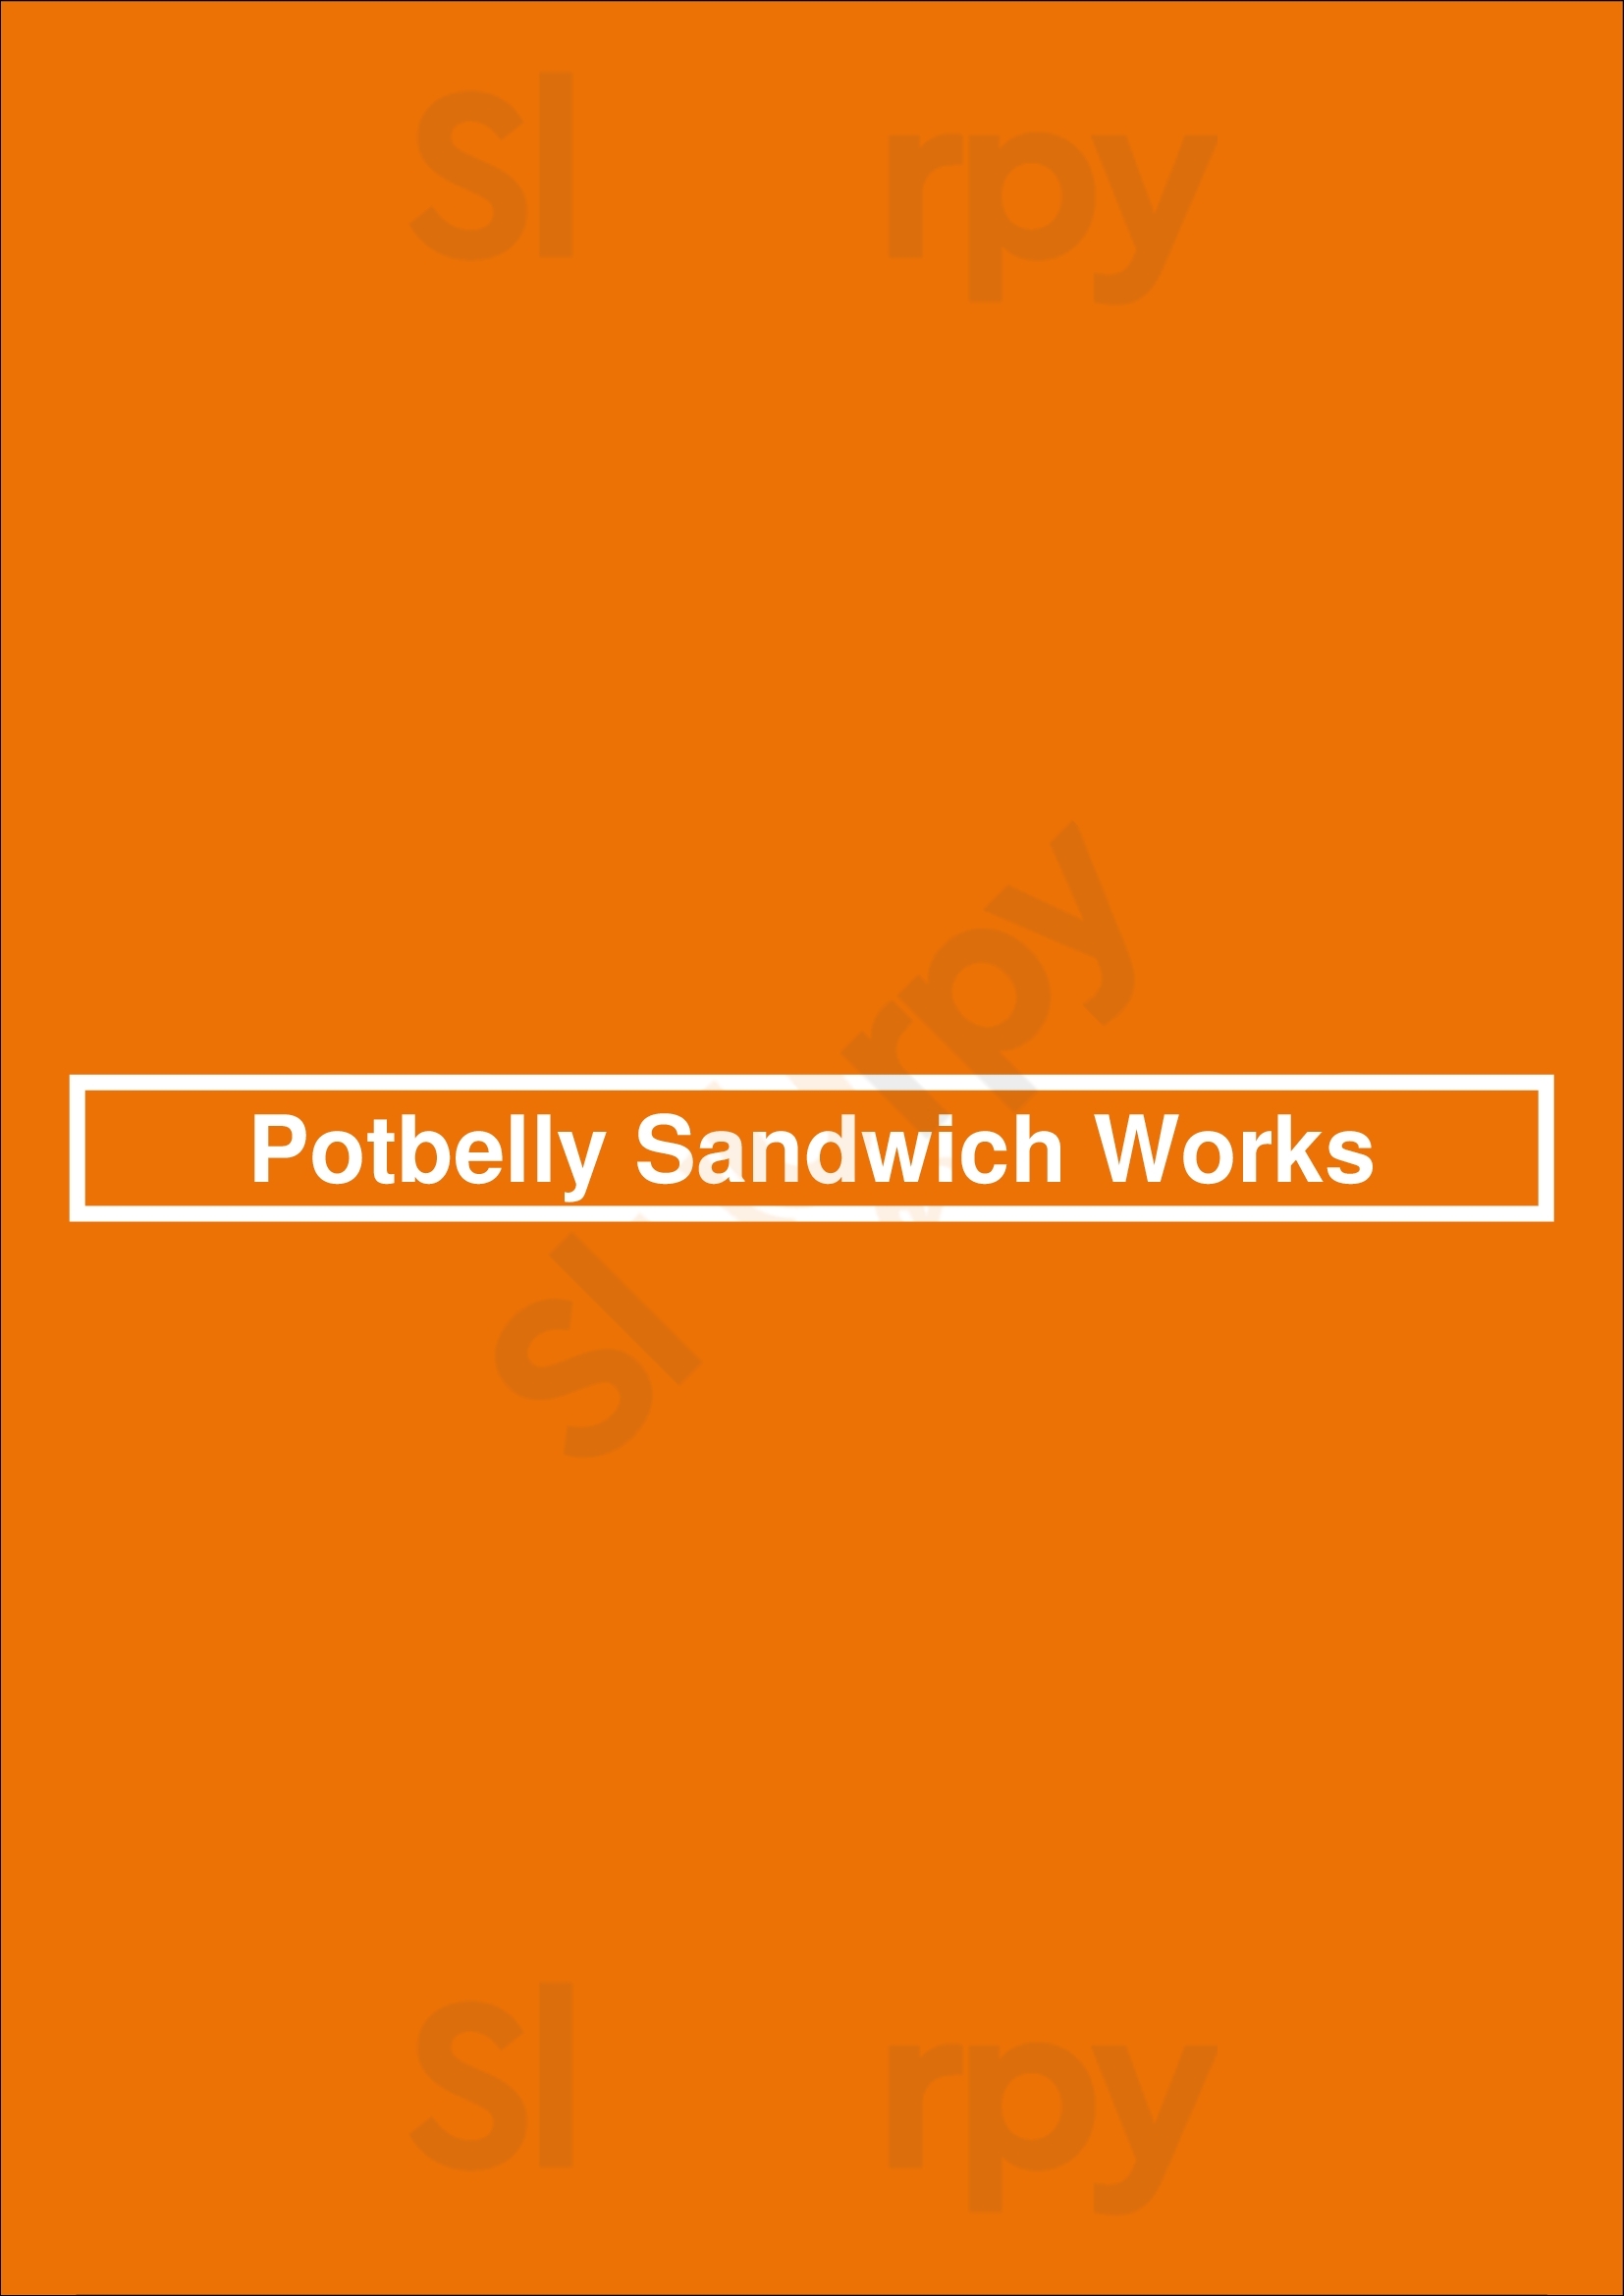 Potbelly Sandwich Works Dallas Menu - 1